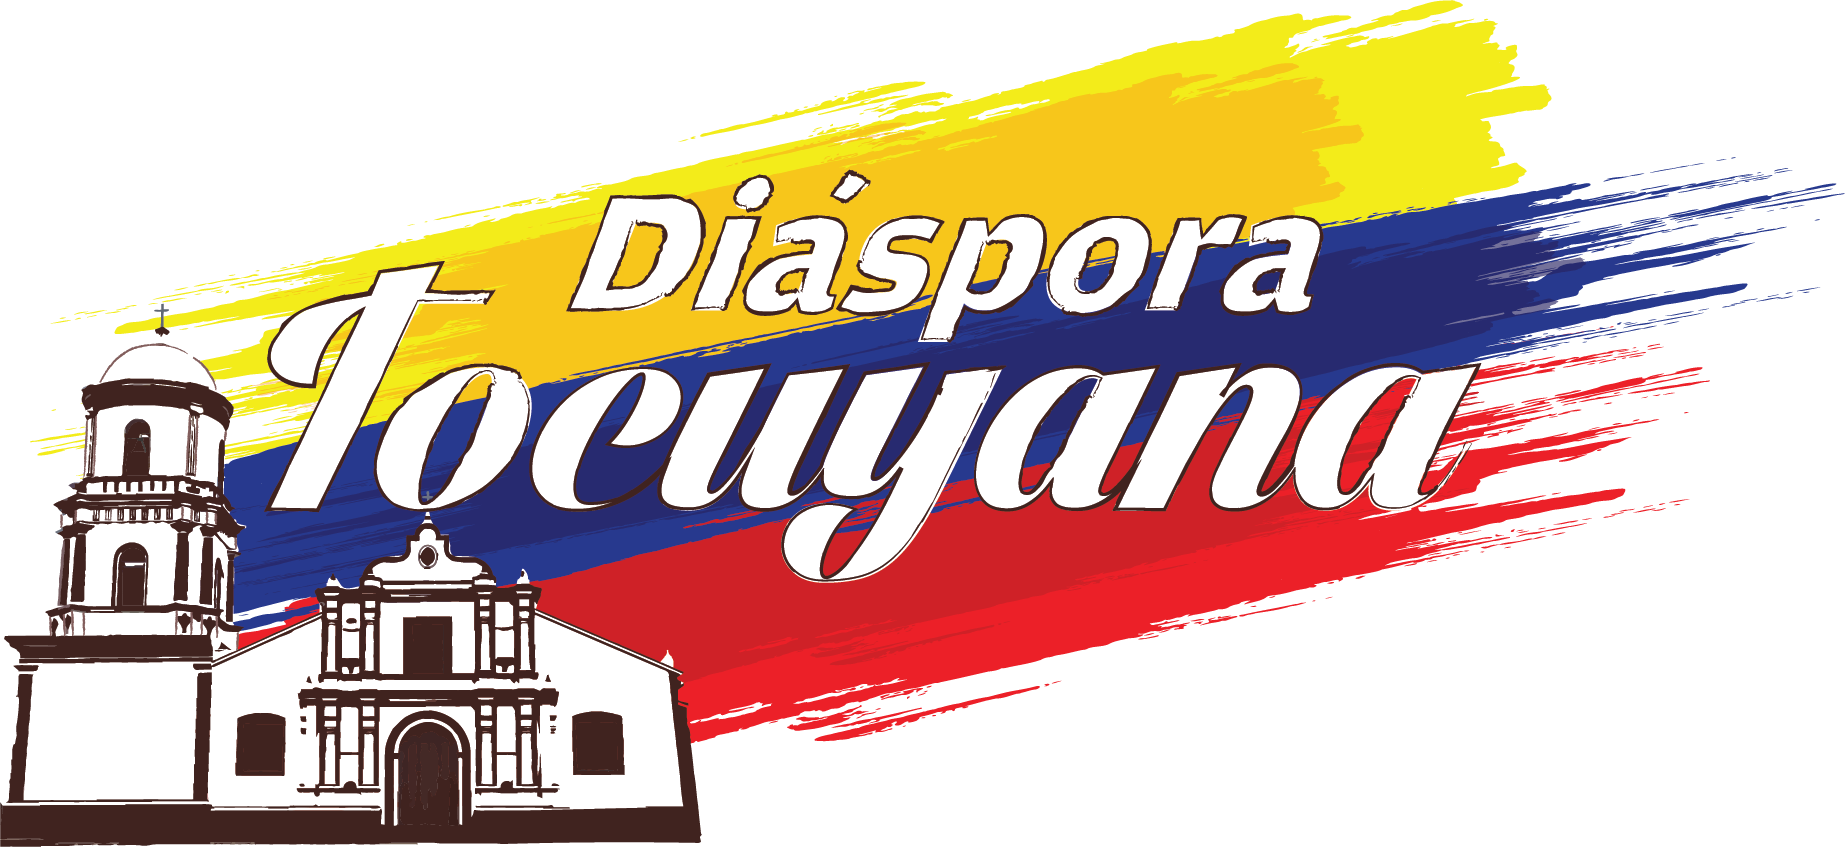 Diaspora Tocuyana